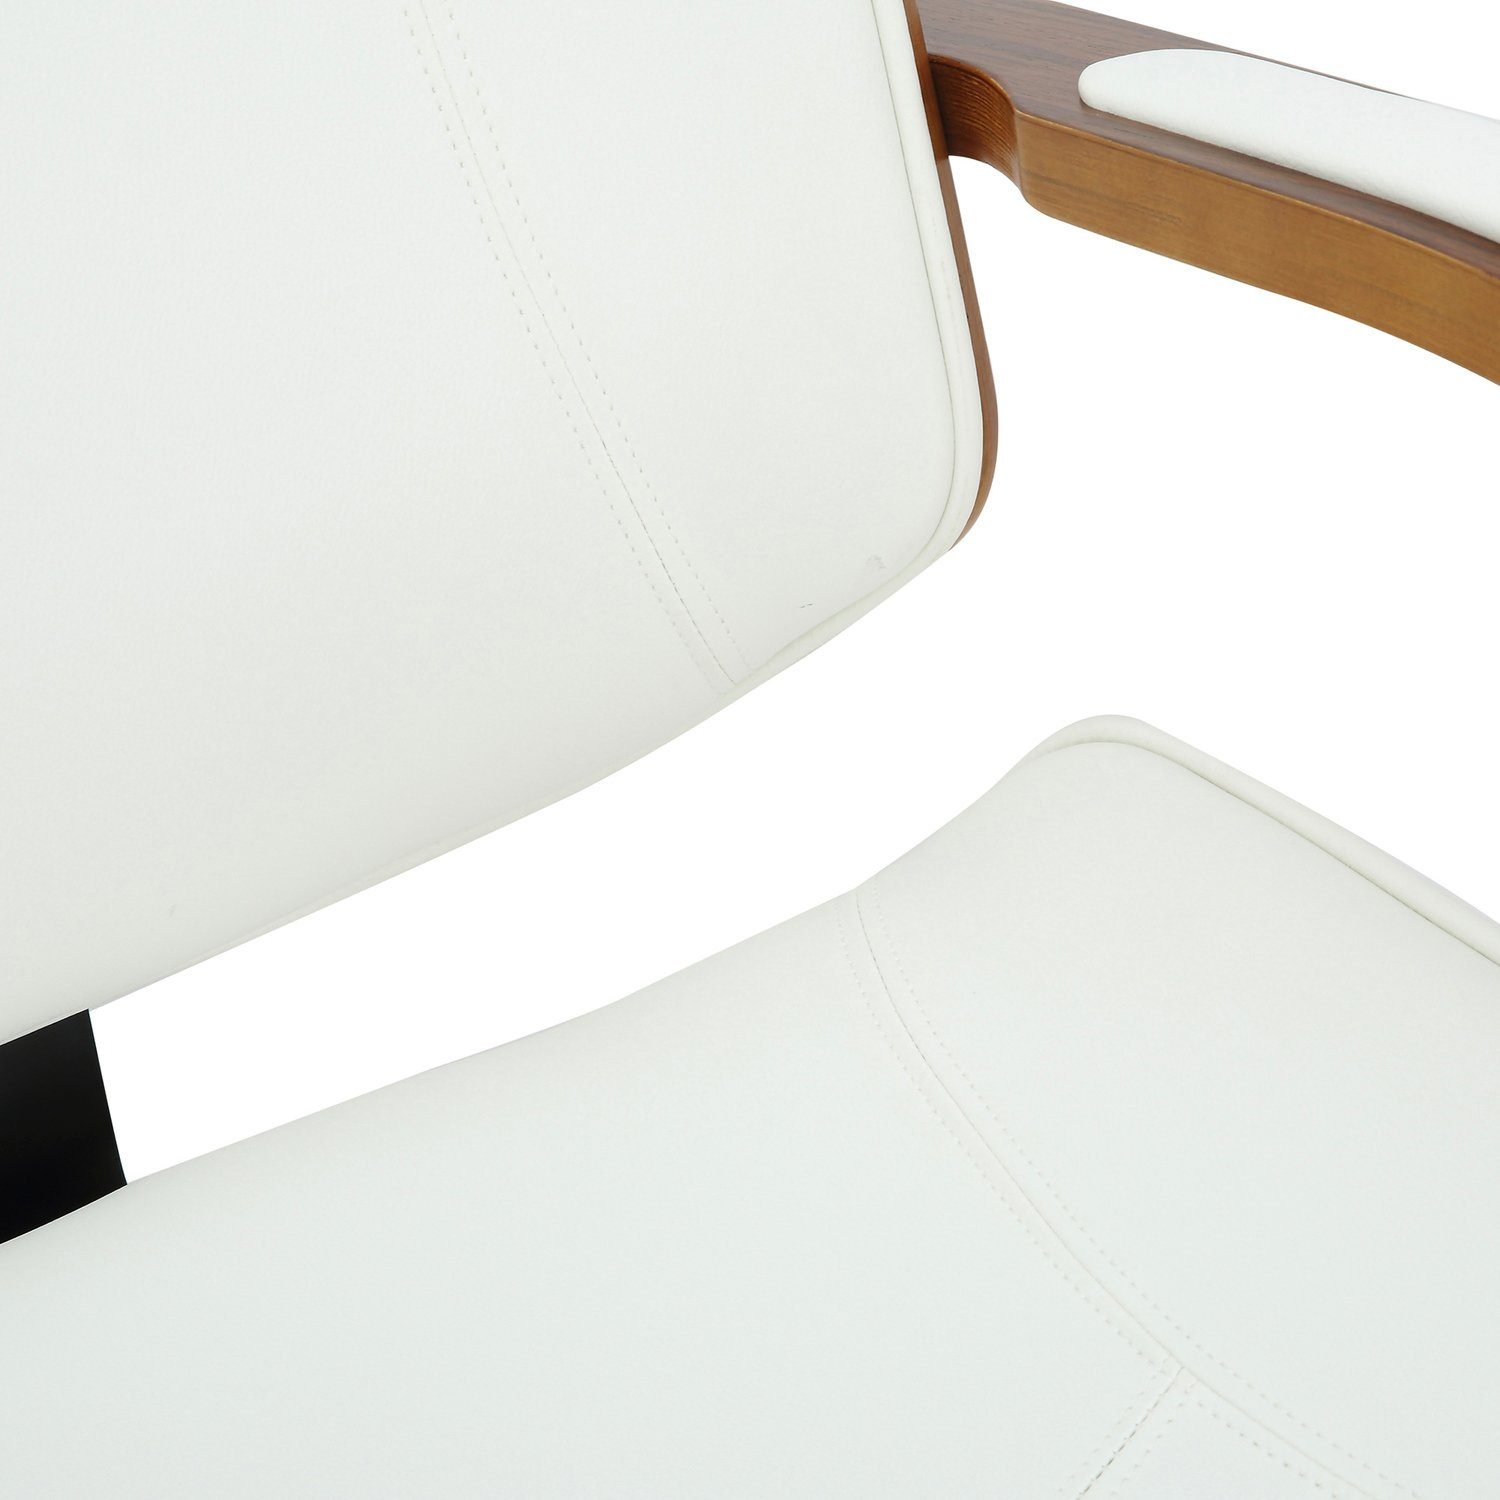 TPFLiving Bürostuhl Daytona mit bequemer XXL), Sitzfläche: (Schreibtischstuhl, und chrom Rückenlehne Chefsessel, Gestell: Drehstuhl, drehbar walnuss/weiß 360° - Kunstleder - Metall Bürostuhl höhenverstellbar